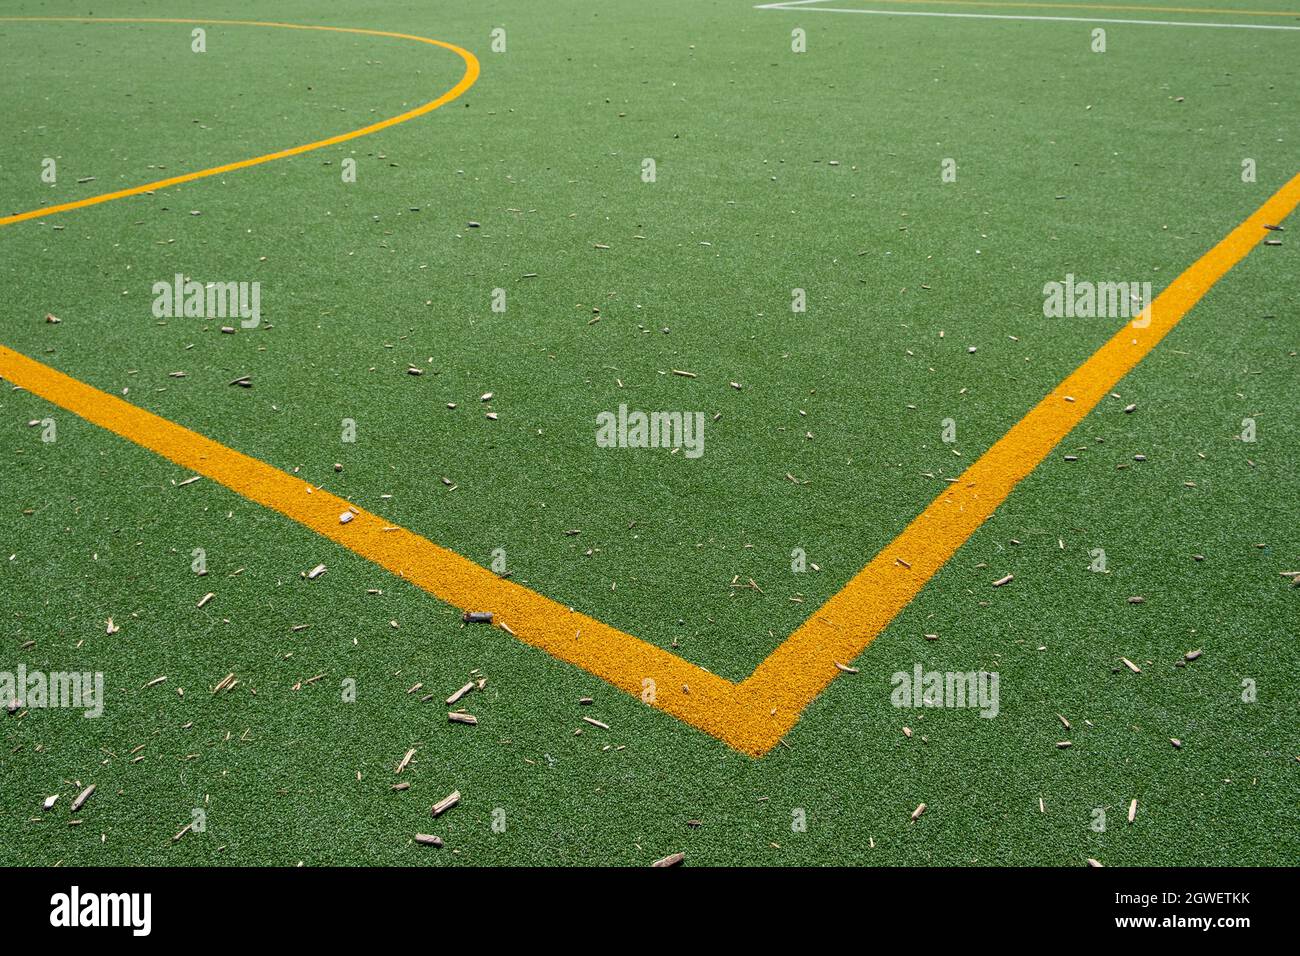 Gelbe Markierung Auf Kunstrasen Fußball Und Netball Feld Nahaufnahme  Stockfotografie - Alamy